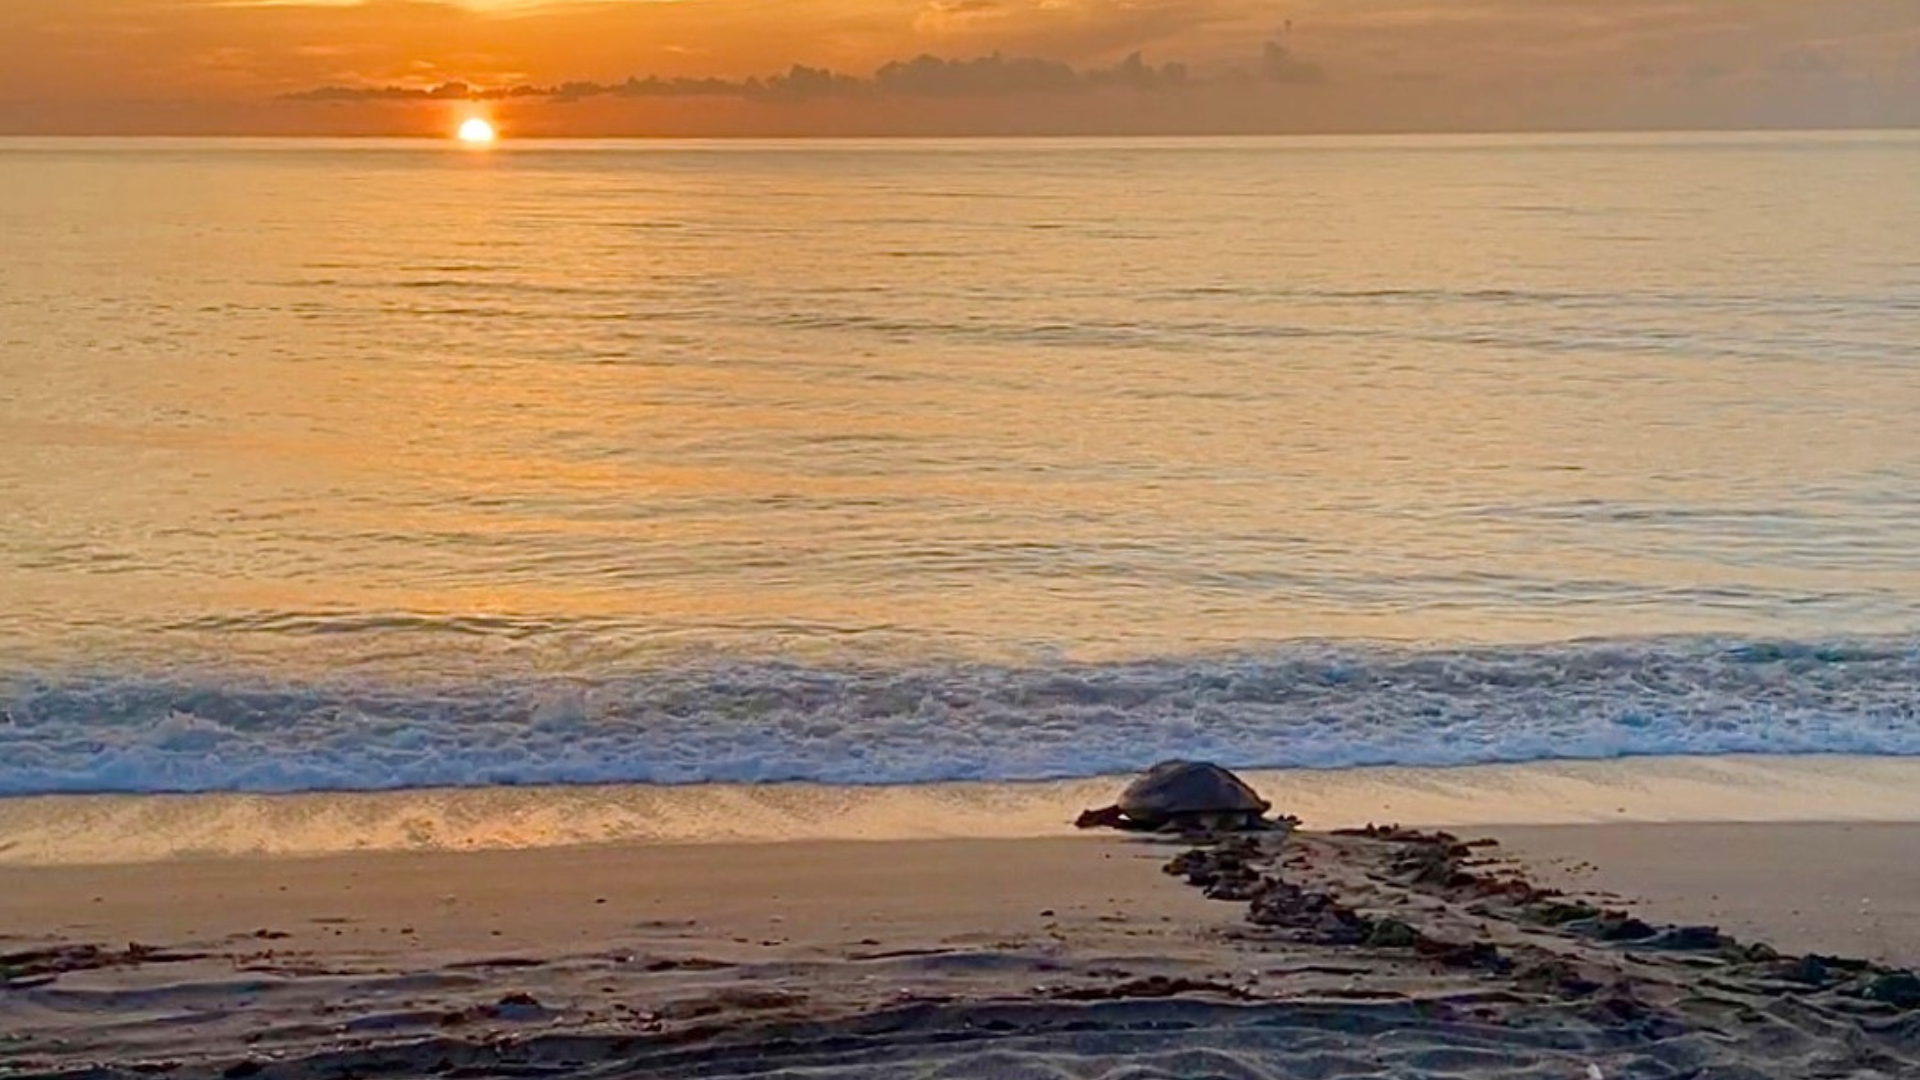 Sunrise Sea Turtle Science Beach Walks header image